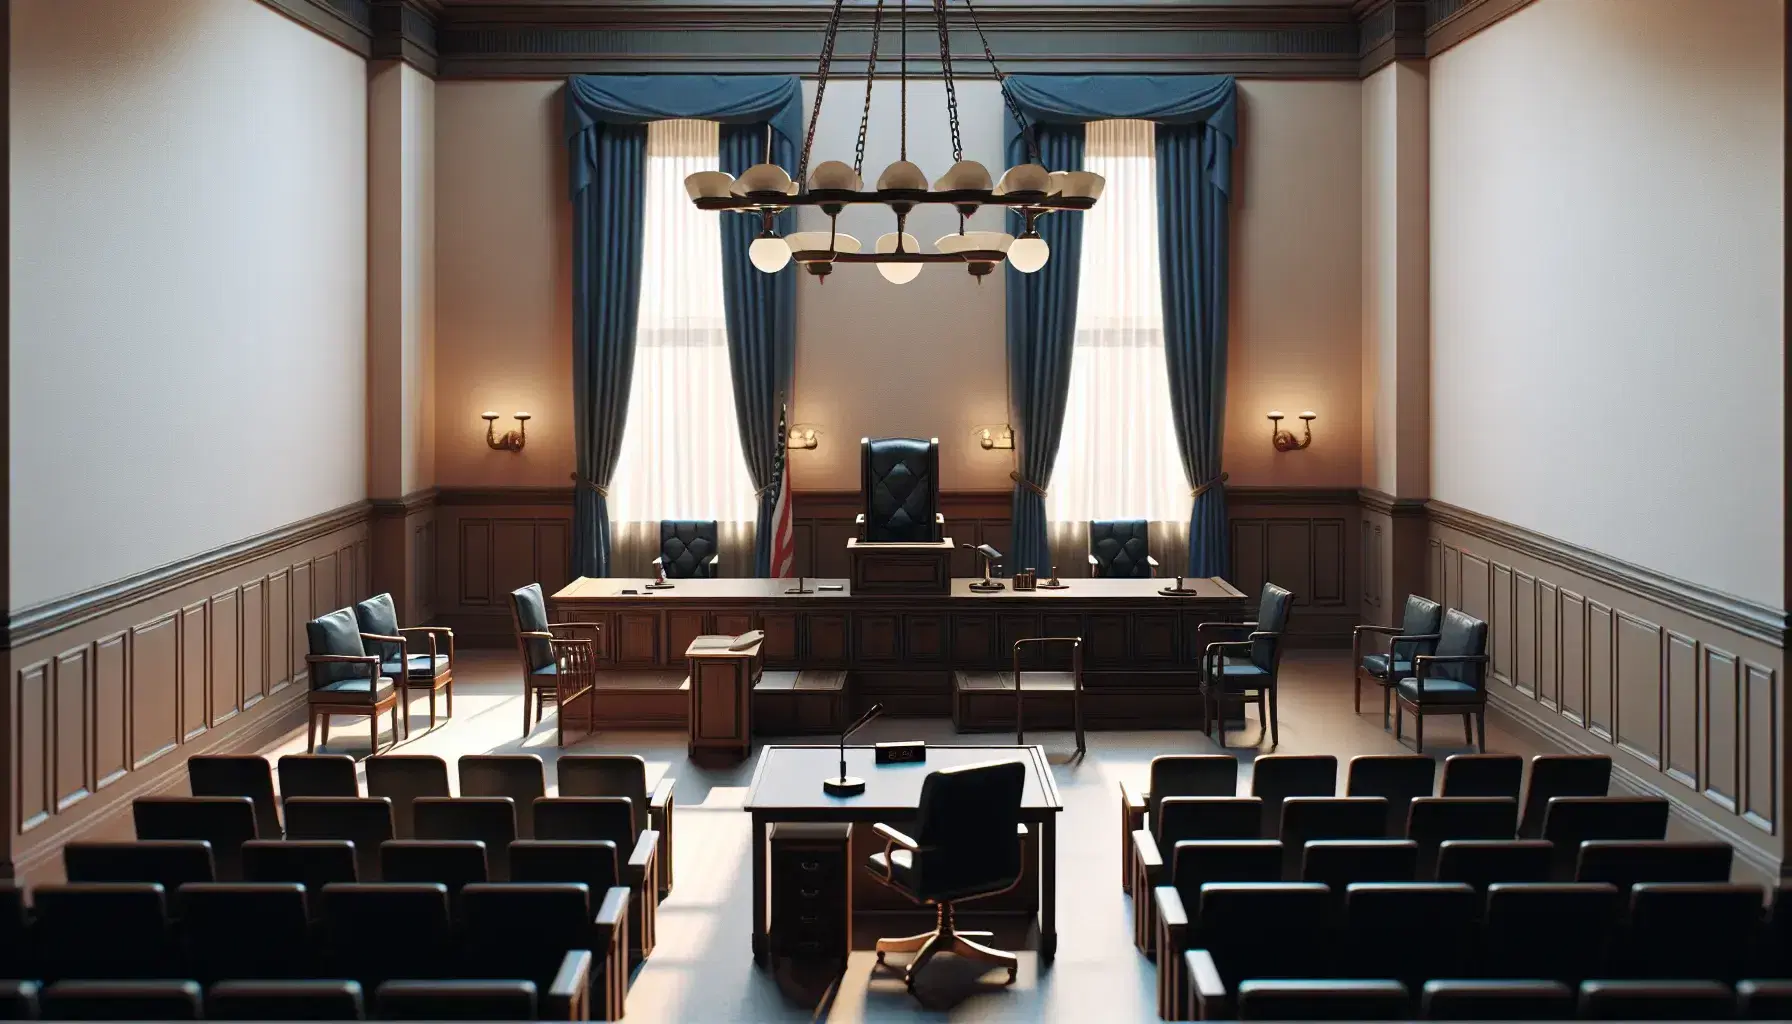 Sala de tribunal vacía con mesa central de madera oscura, sillas a los lados, estrado del juez con silla de cuero negro y cortinas azules.